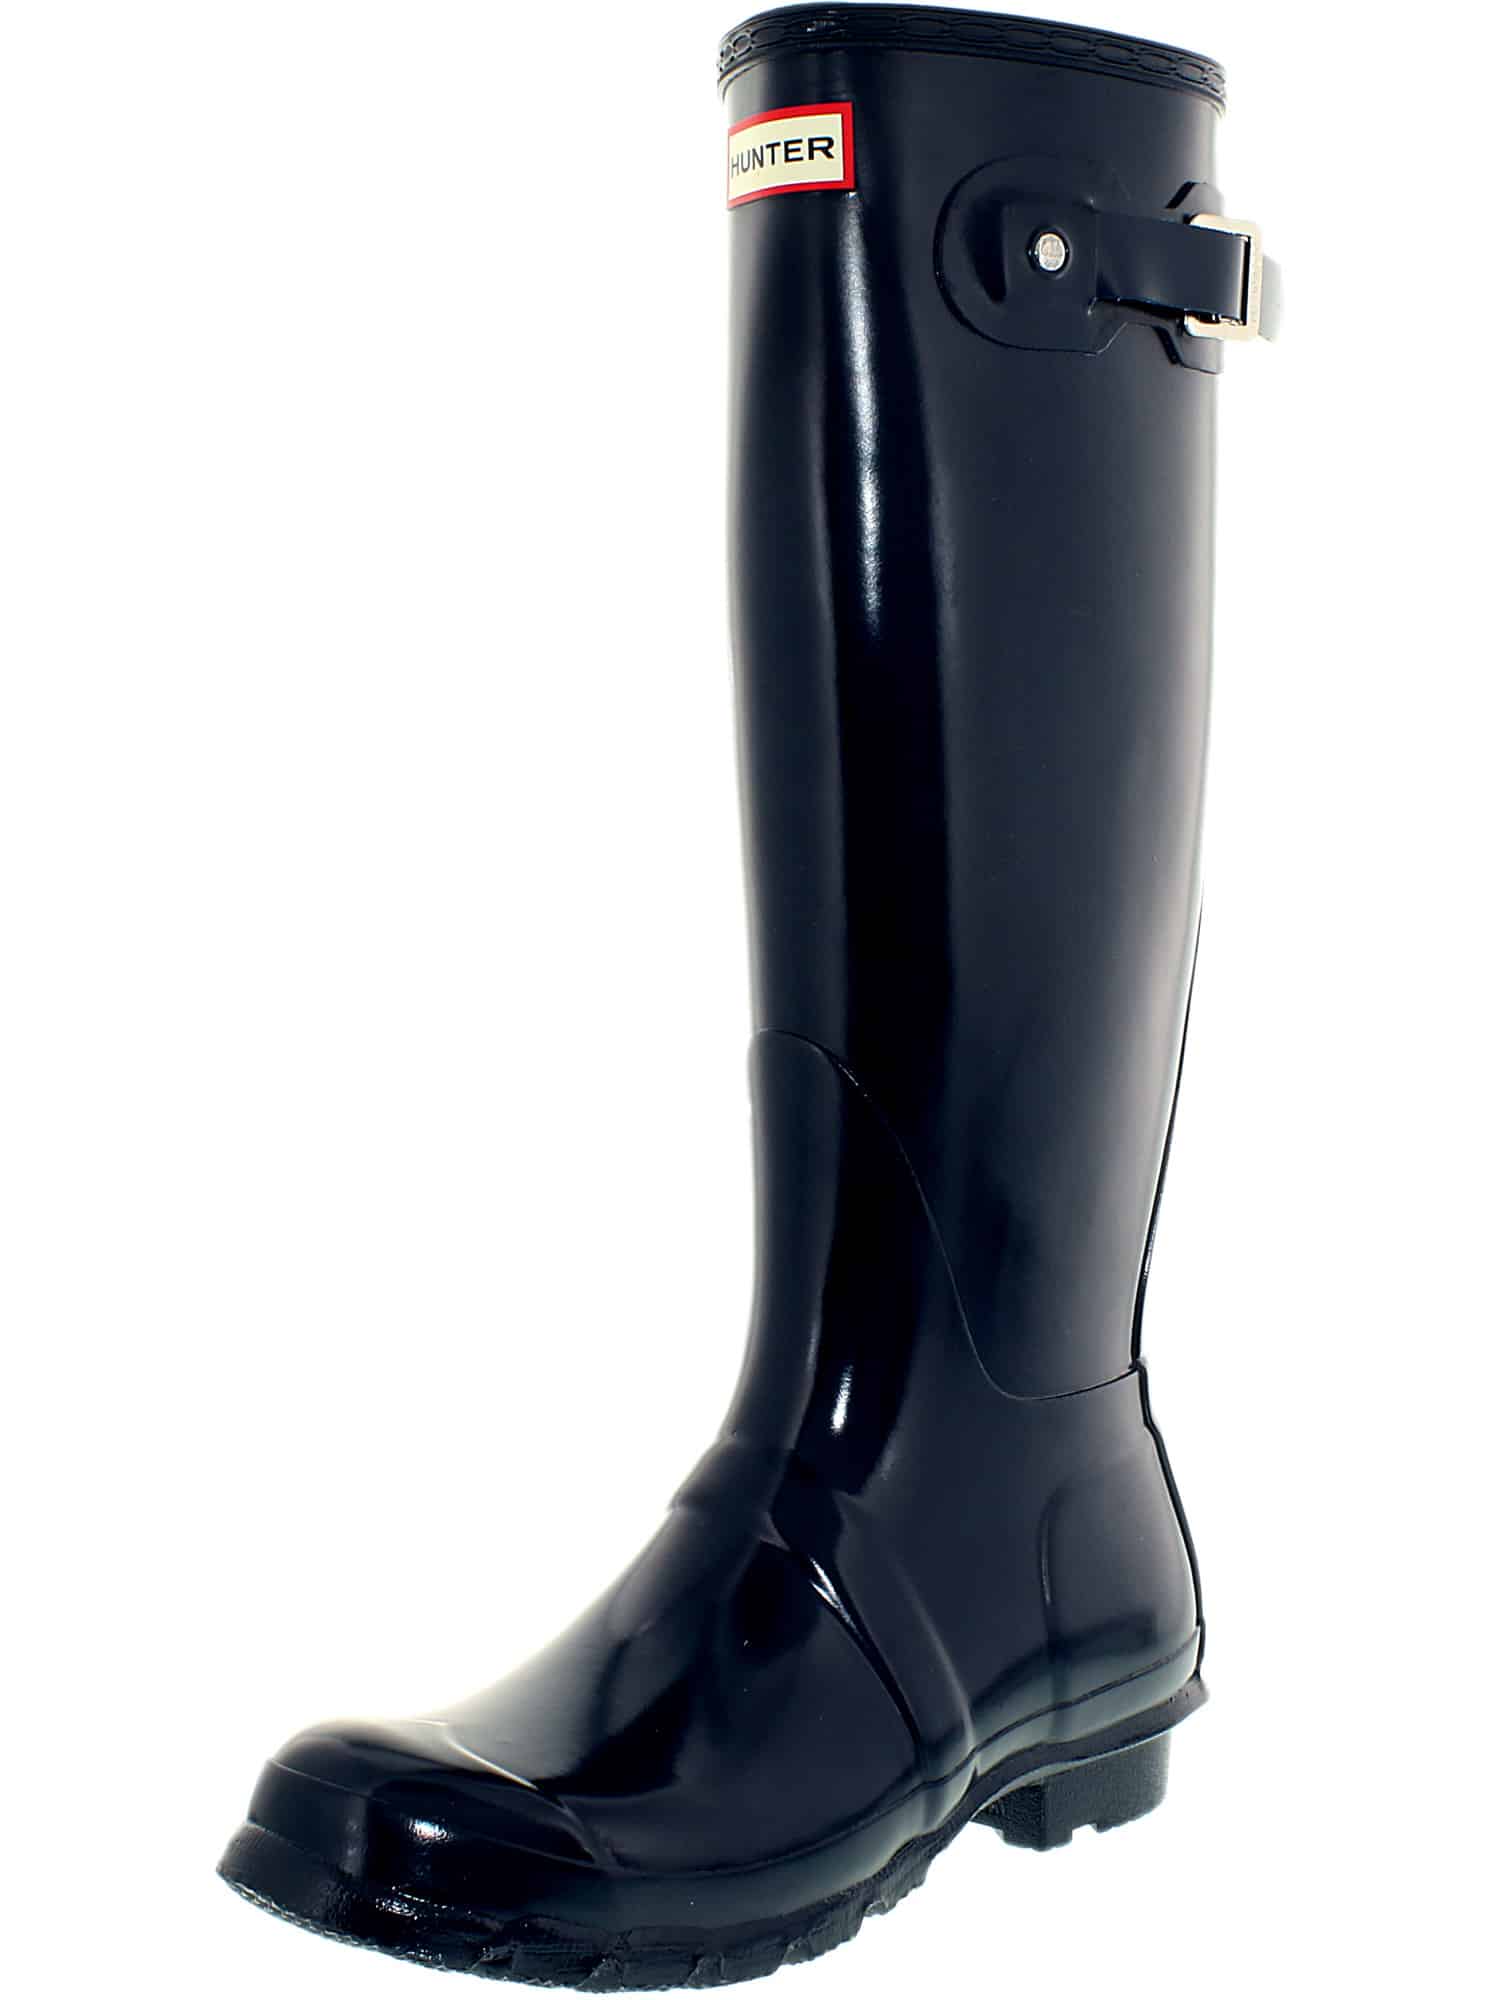 Hunter Women’s Original Tall Rain Boots -$54.90(63% Off)